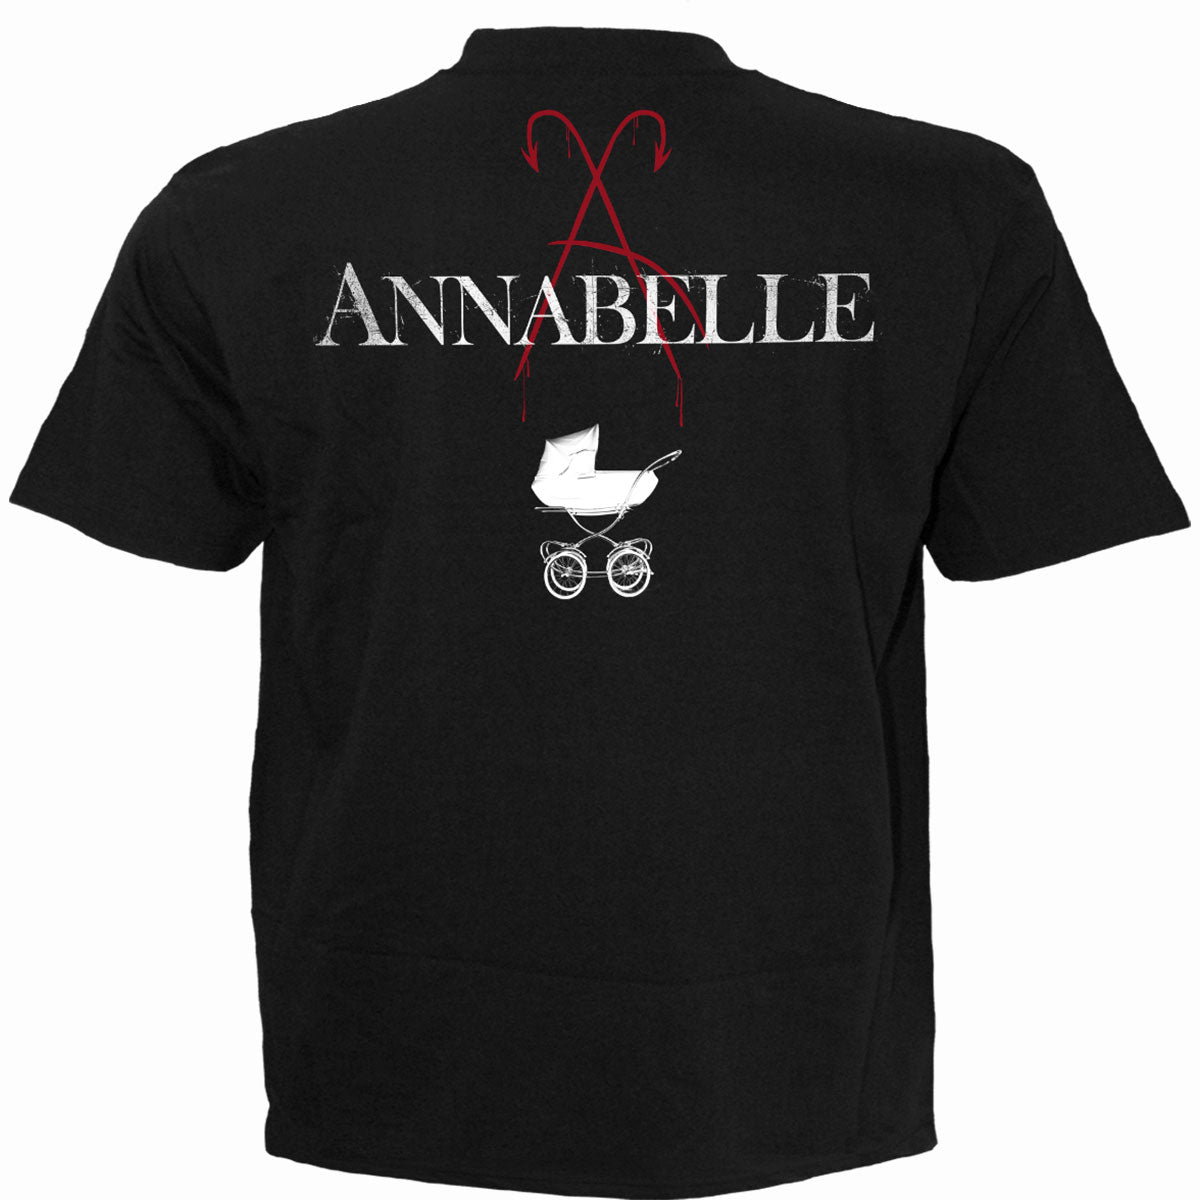 ANNABELLE - FOUND YOU - Camiseta Negra